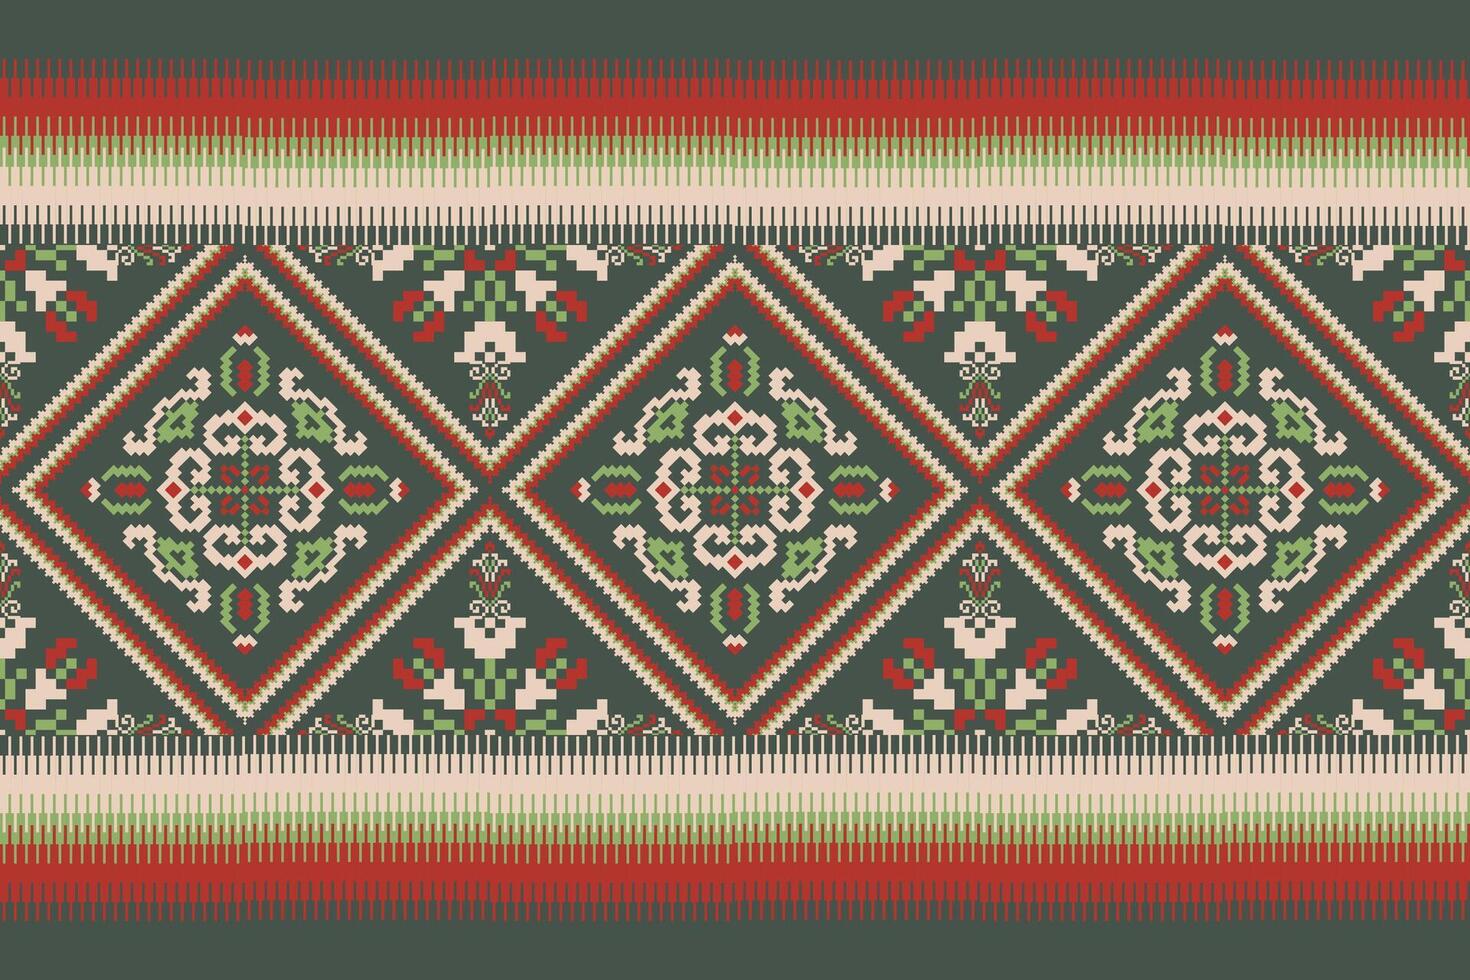 geometrisch ethnisch orientalisch Muster Vektor Illustration.floral Pixel Kunst Stickerei auf Grün Hintergrund, Azteken Stil, abstrakt hintergrund.design zum Textur, Stoff, Kleidung, Verpackung, Dekoration, Schal, Druck